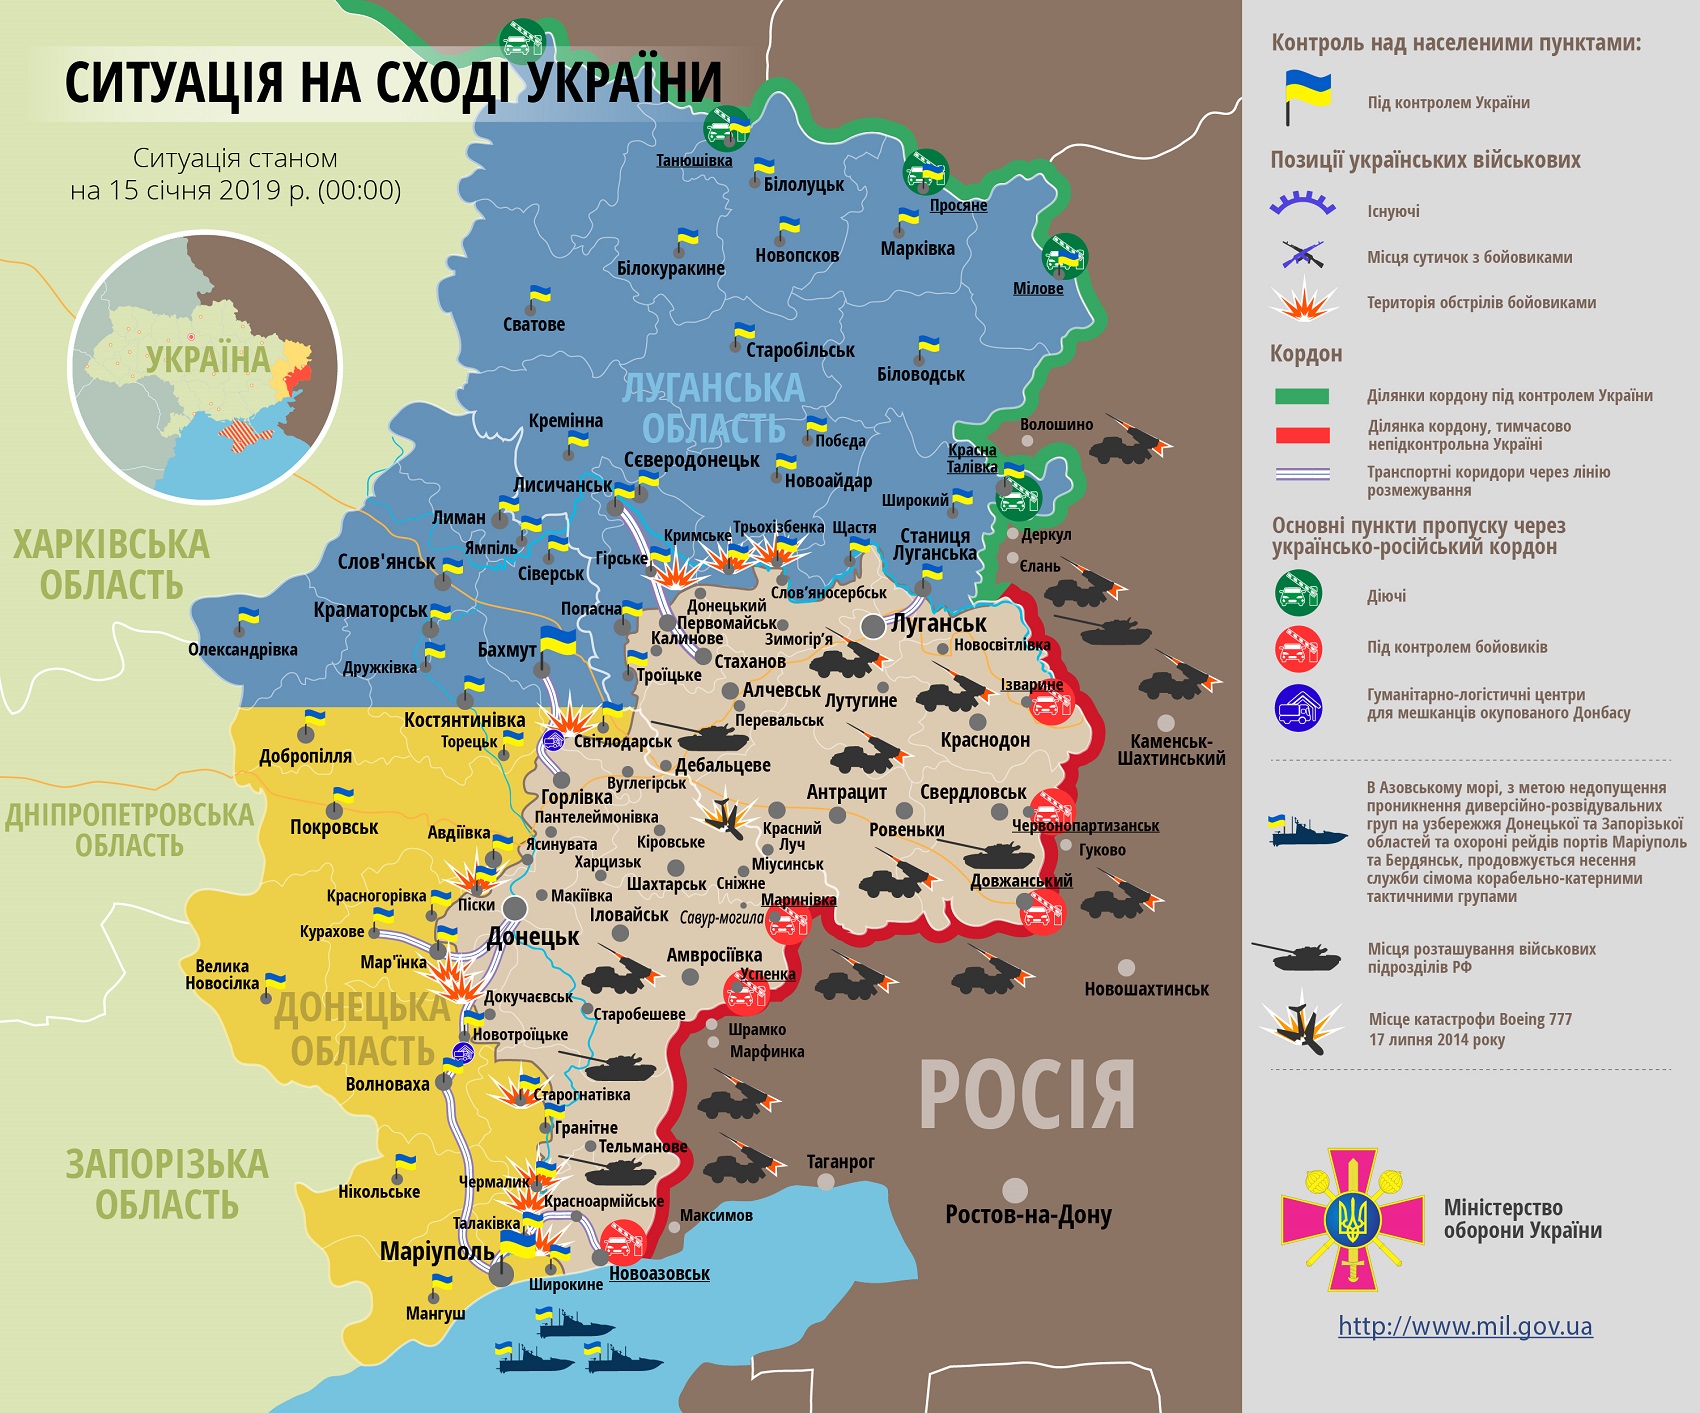 ВСУ отстояли рубежи на Донбассе, ряды оккупантов снова поредели: боевая сводка и карта ООС за 15 января